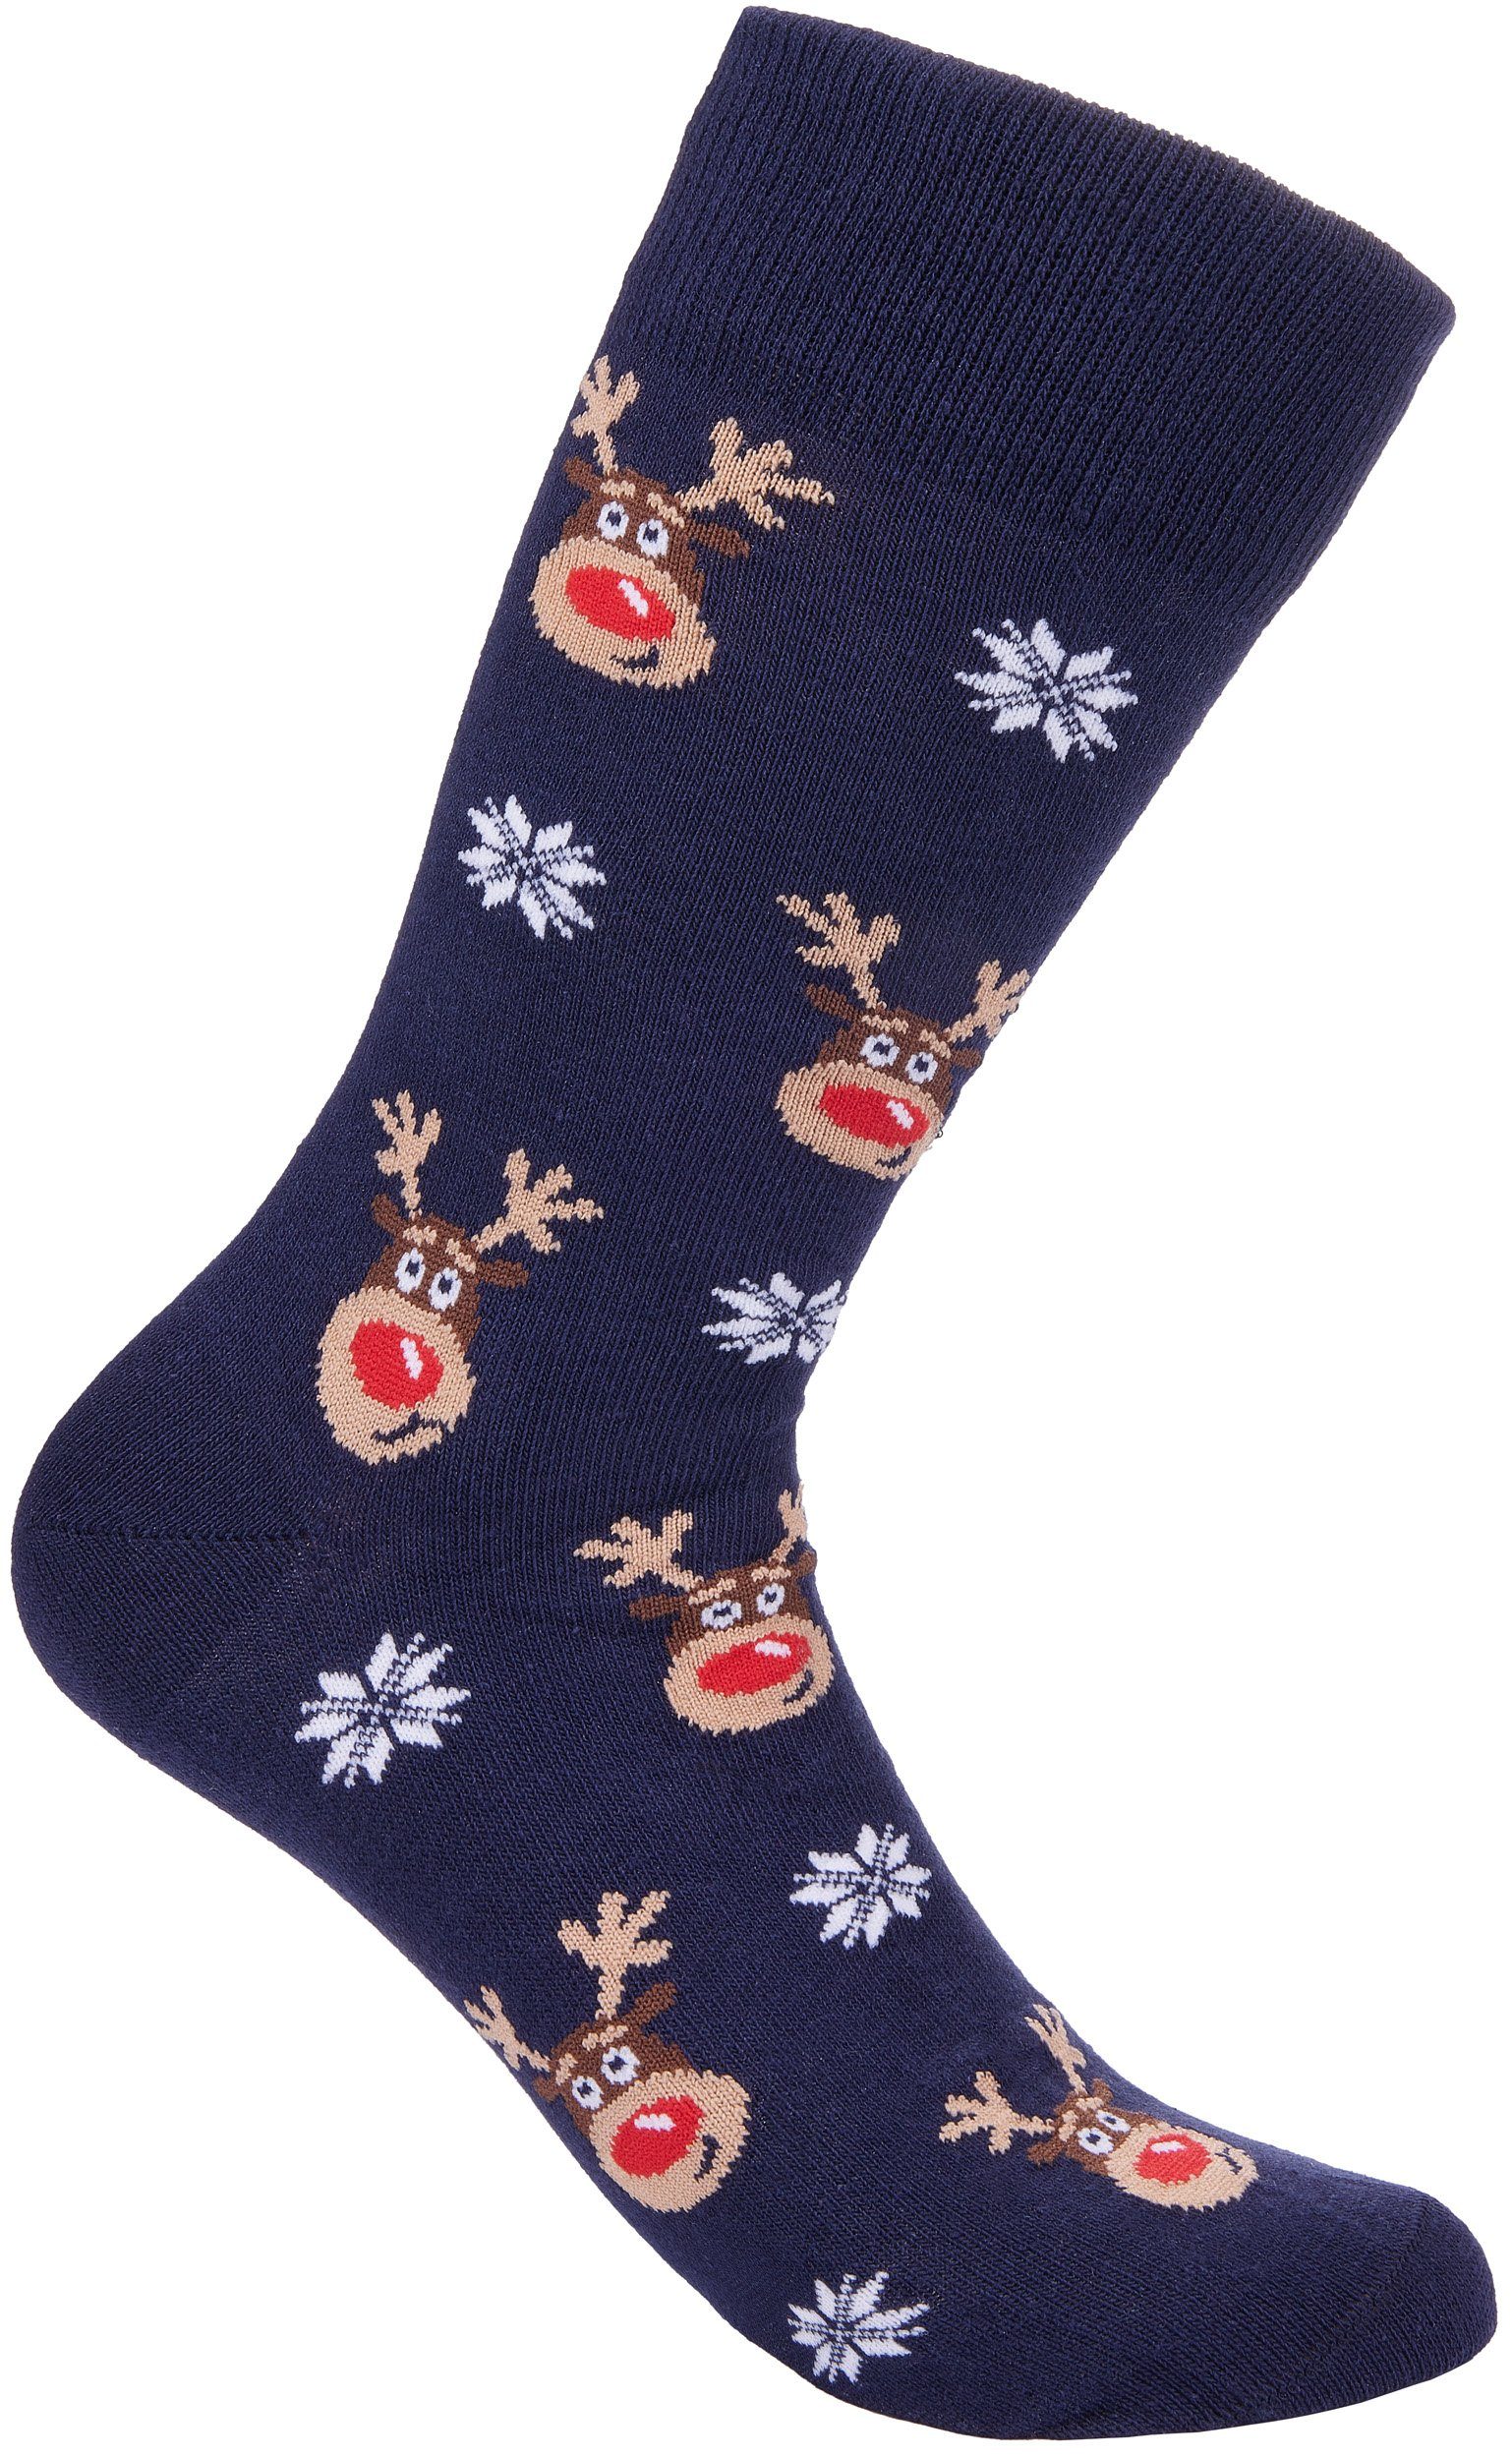 BRUBAKER Socken »Weihnachtssocken für Damen und Herren« (1-Paar, 1 Paar)  Festliche Weihnachtsmotive Rentiere - Baumwolle Socken Weihnachten - Unisex  One Size EU 40-45 online kaufen | OTTO